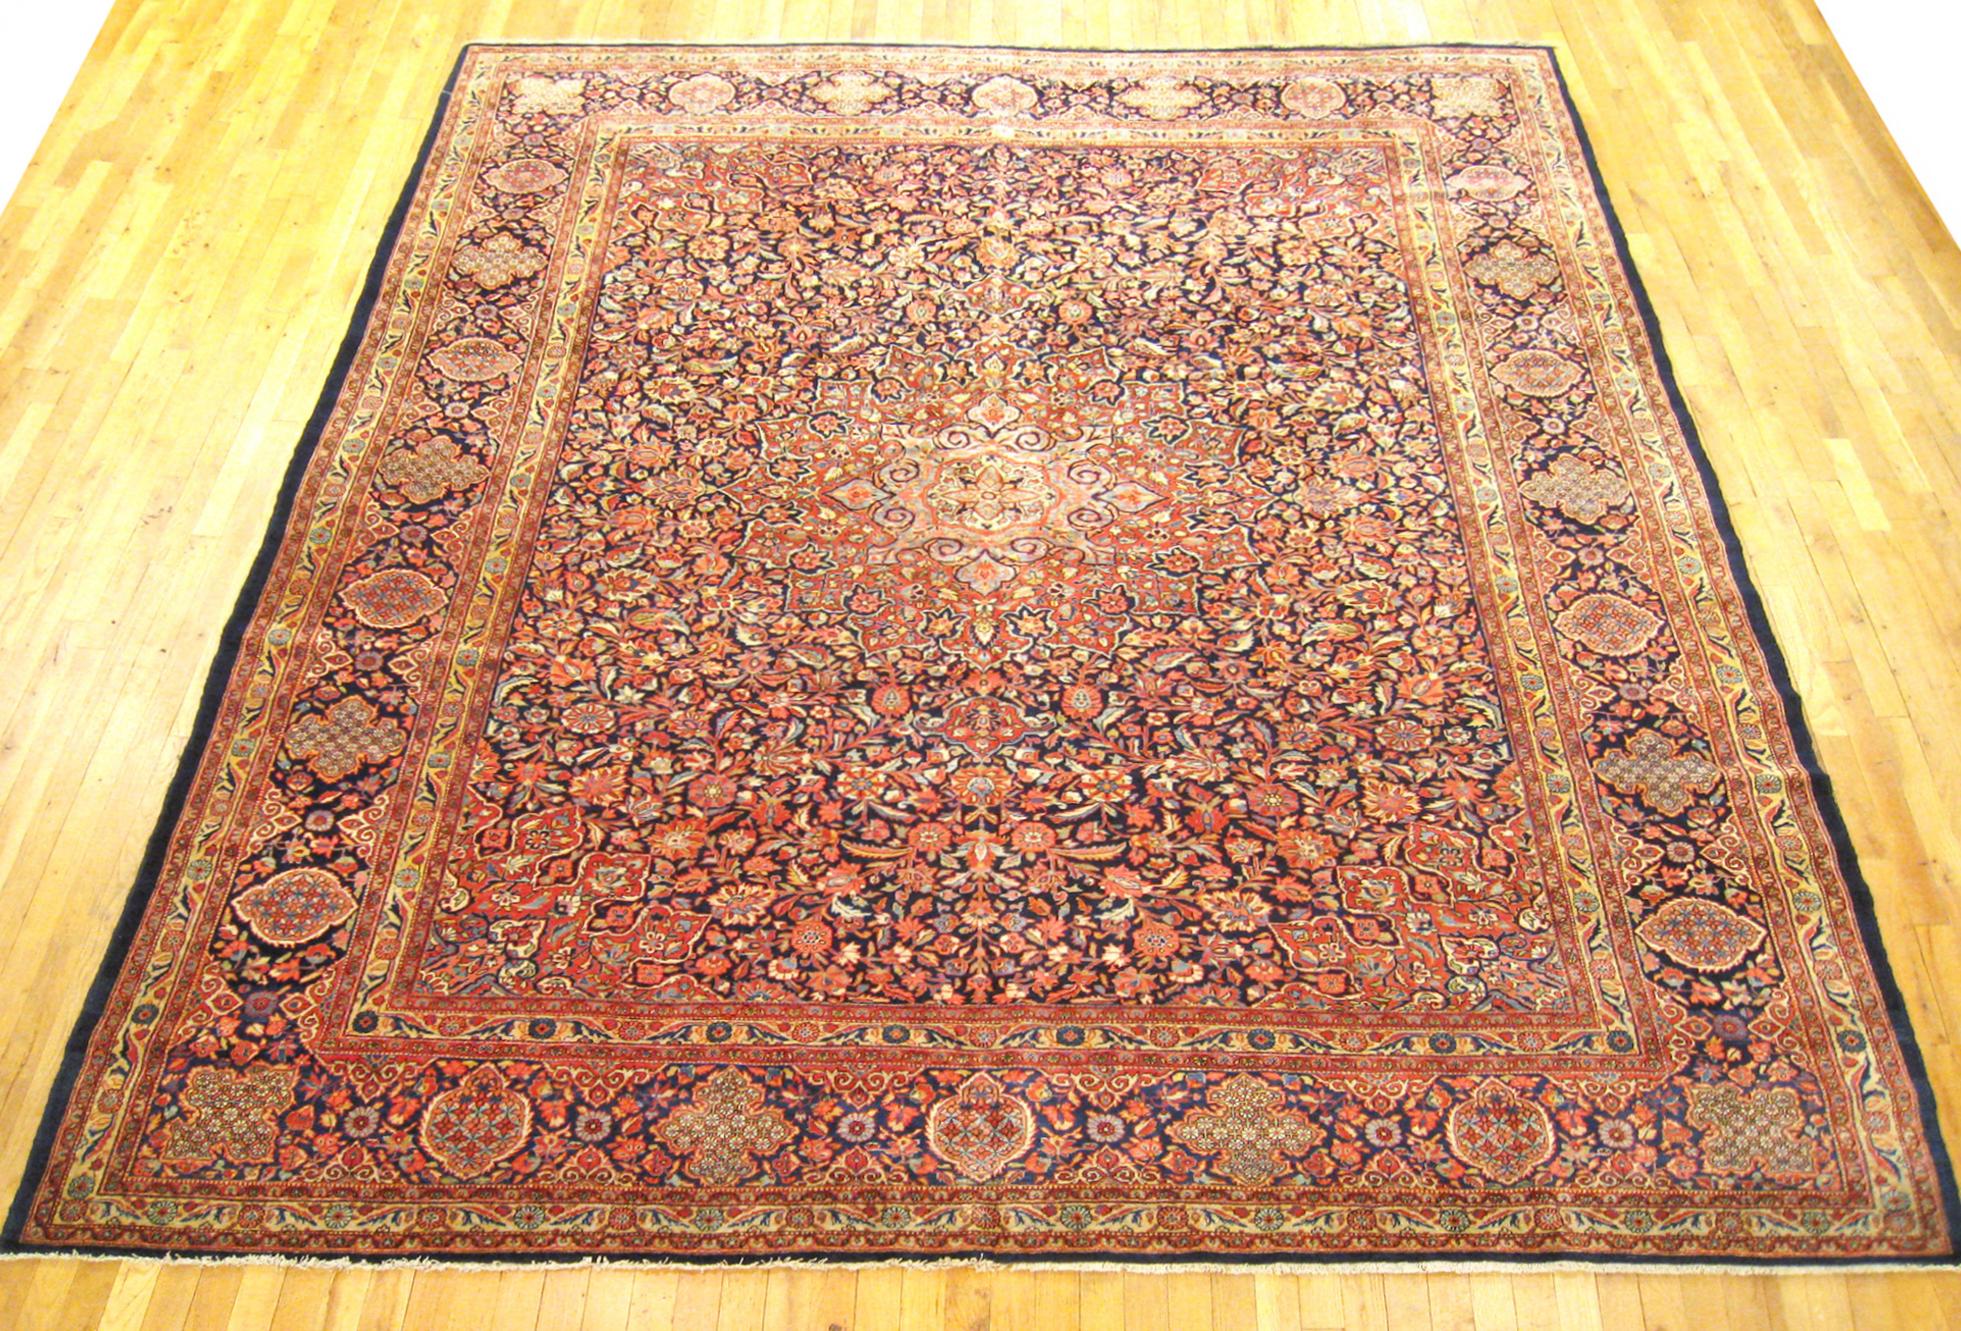 Tapis oriental antique persan Kashan Dabir, au format d'une pièce.

Extraordinaire tapis persan antique Kashan Dabir, vers 1910, taille 11'7